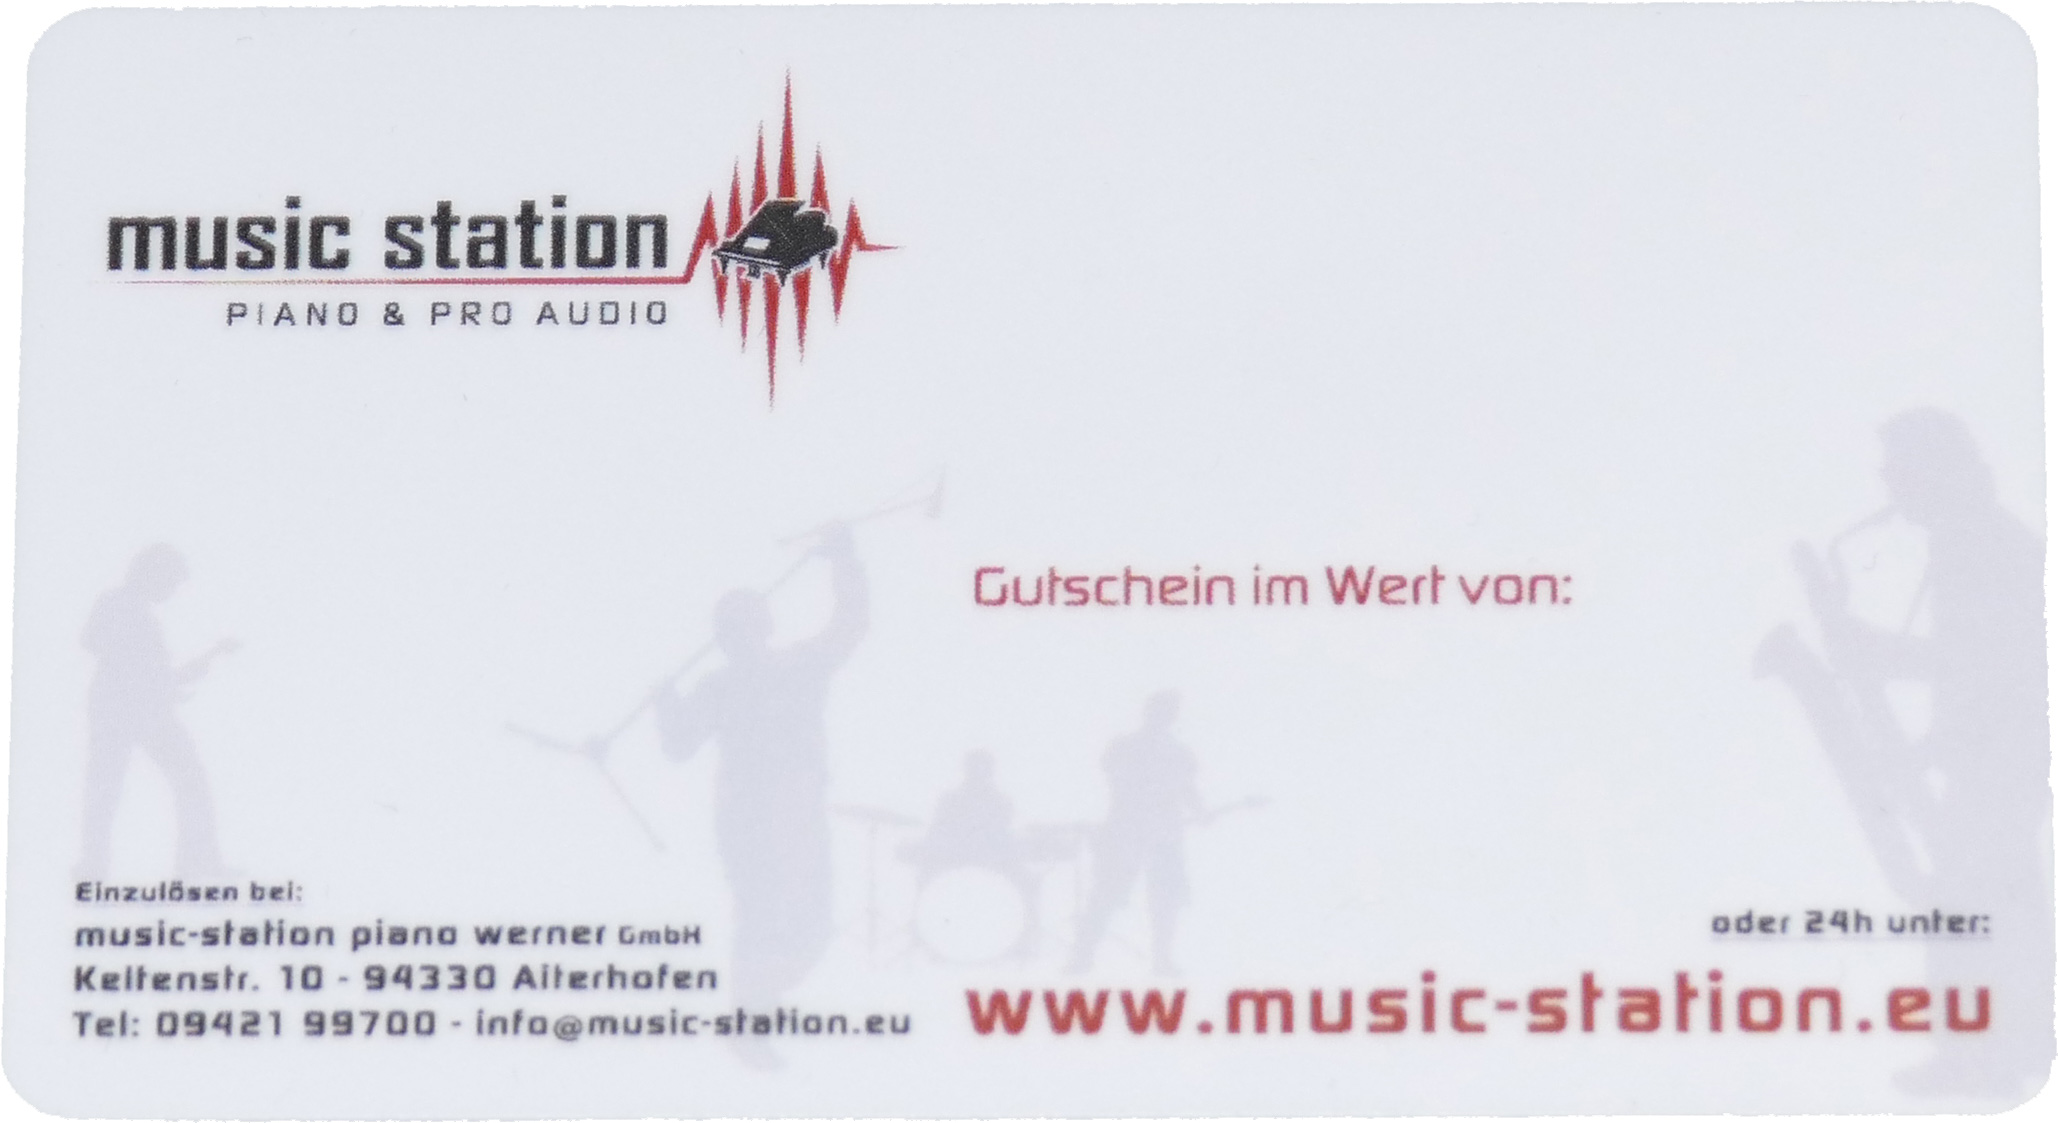 Music Station Gutschein 250 Euro